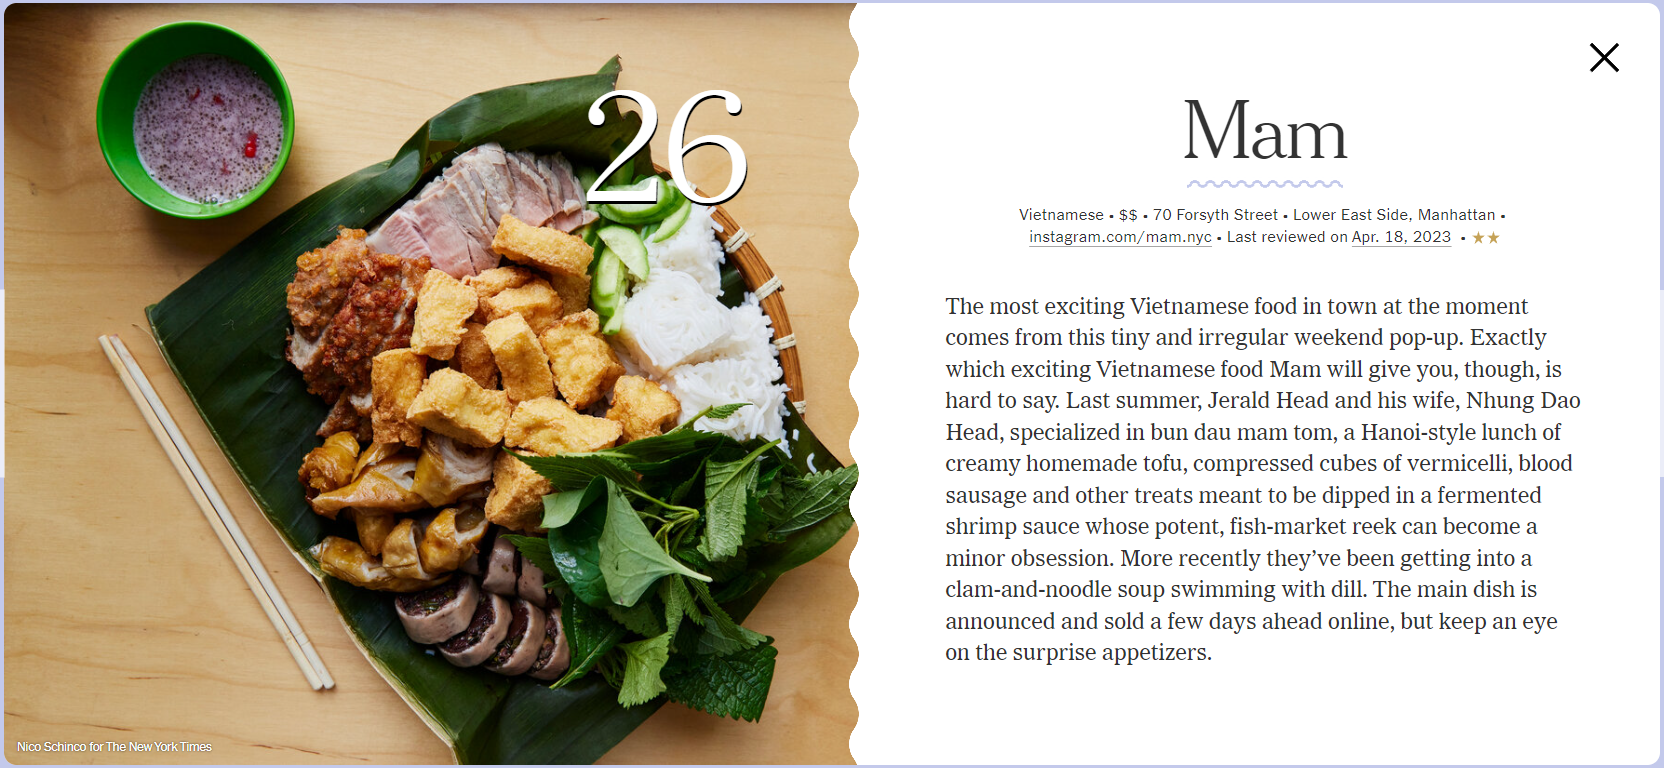 Nhà hàng Việt bán bún đậu mắm tôm 800 nghìn VNĐ/suất ở New York: Lọt top 30 quán ăn ngon nhất của báo Mỹ, thực đơn khiến khách ca ngợi hết lời - Ảnh 1.